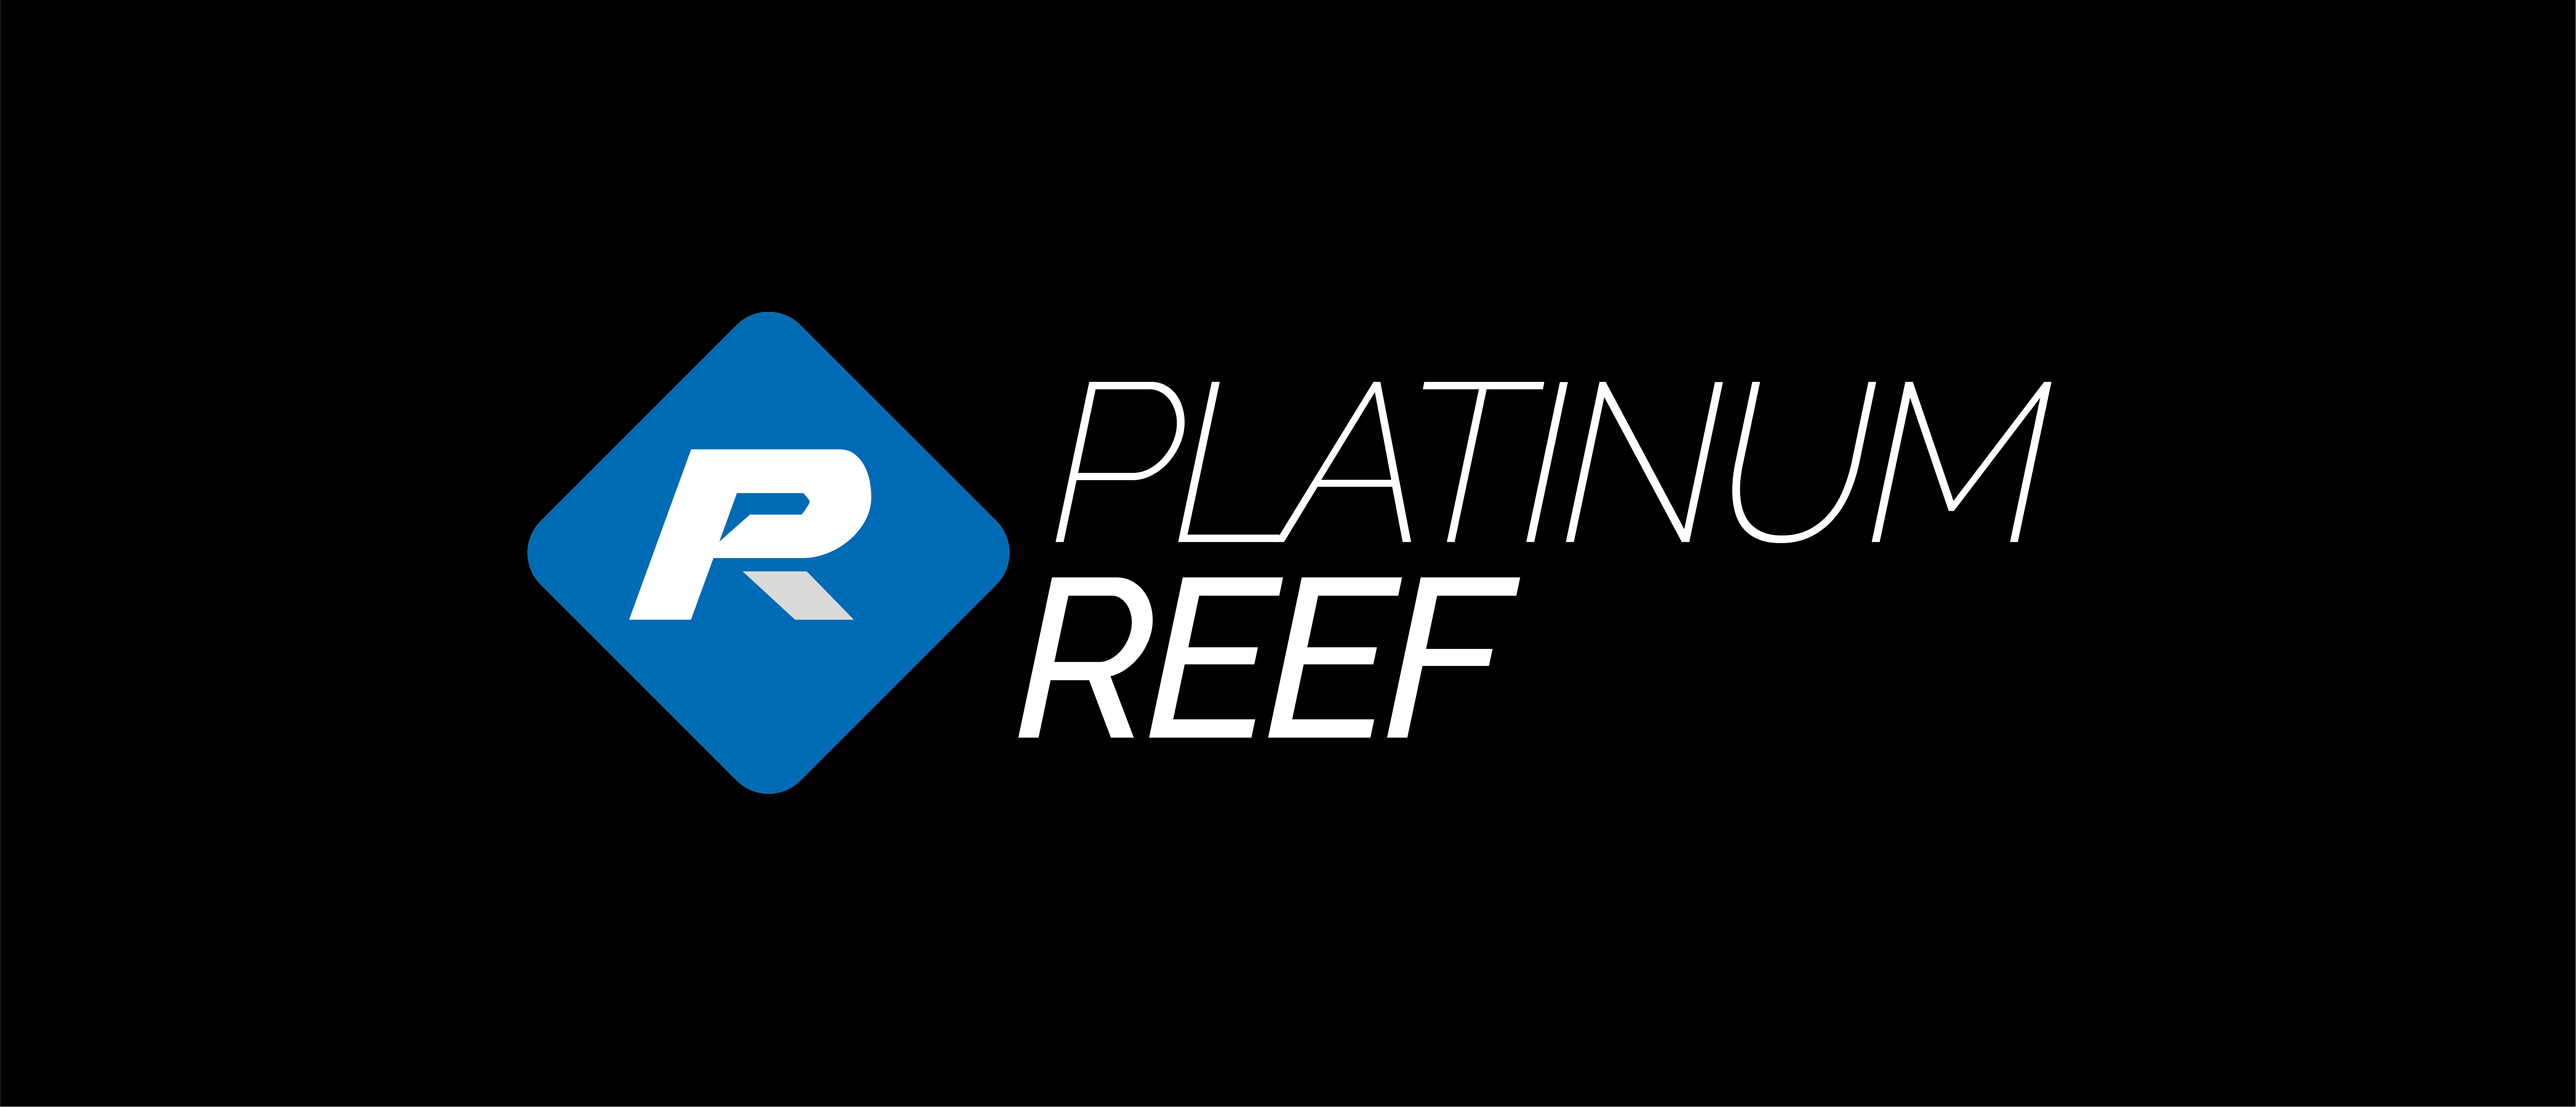 Platinum Reef Products